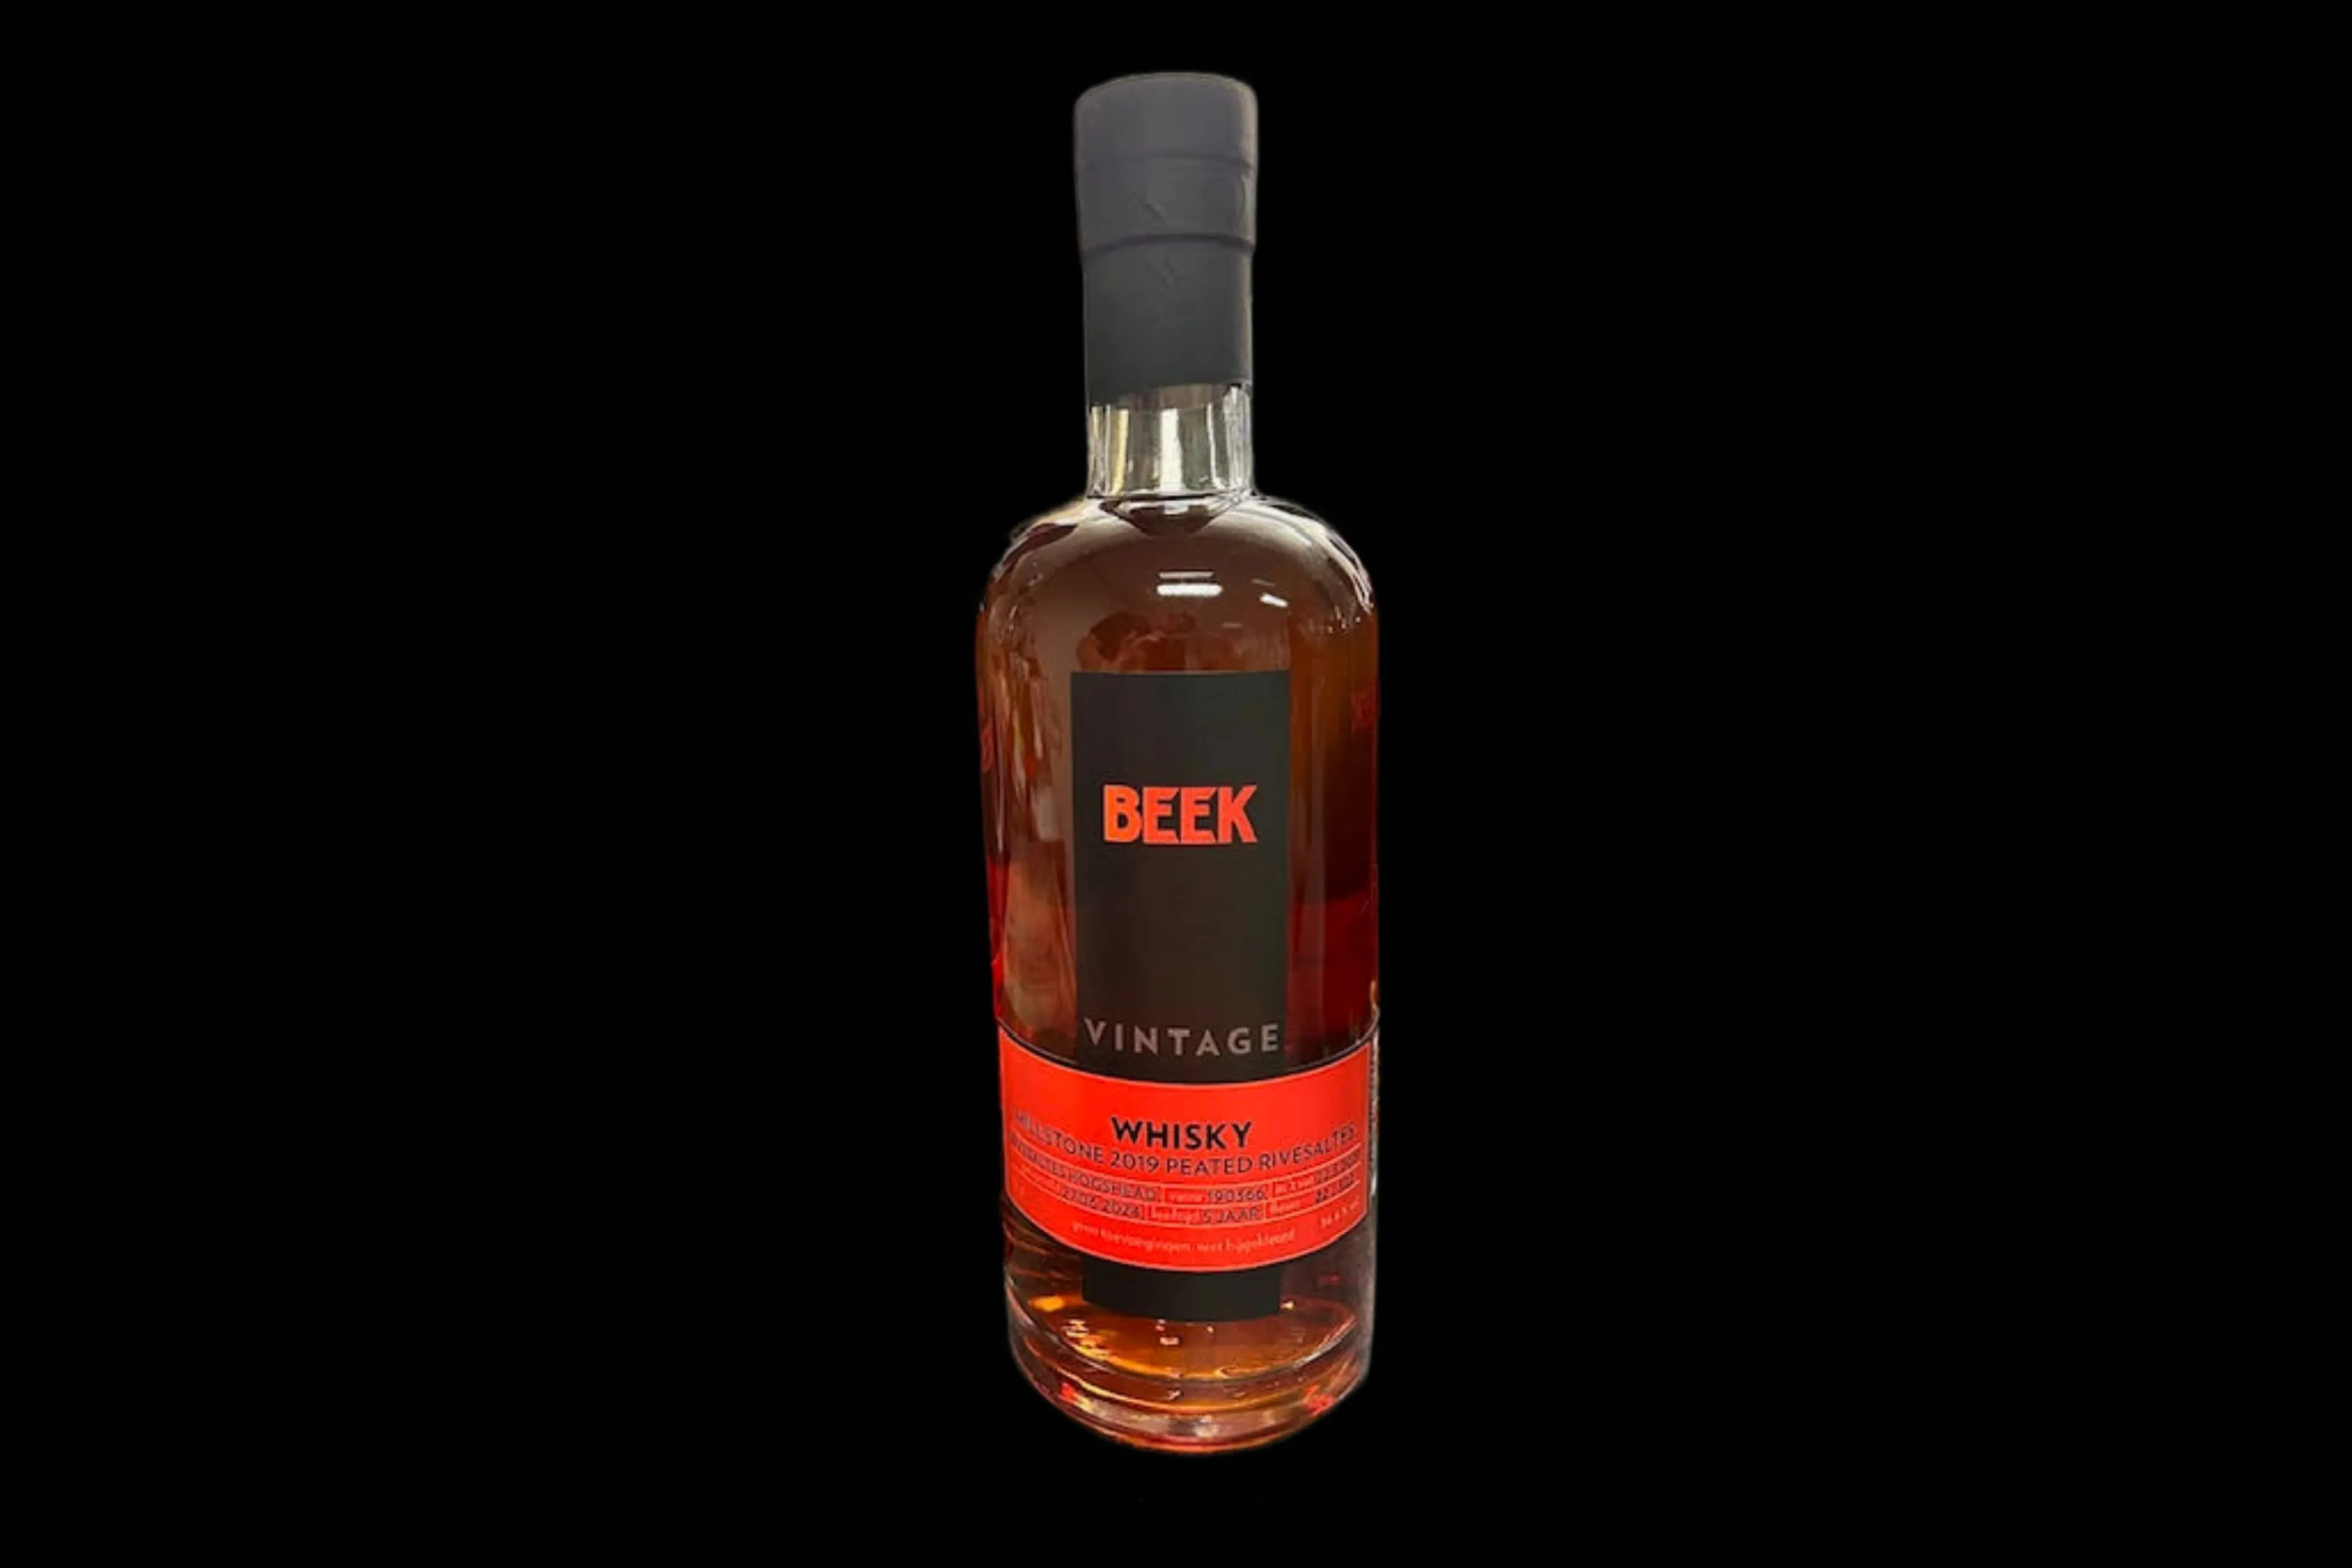 beek vintage millstone 2019 rivesaltes whisky 2